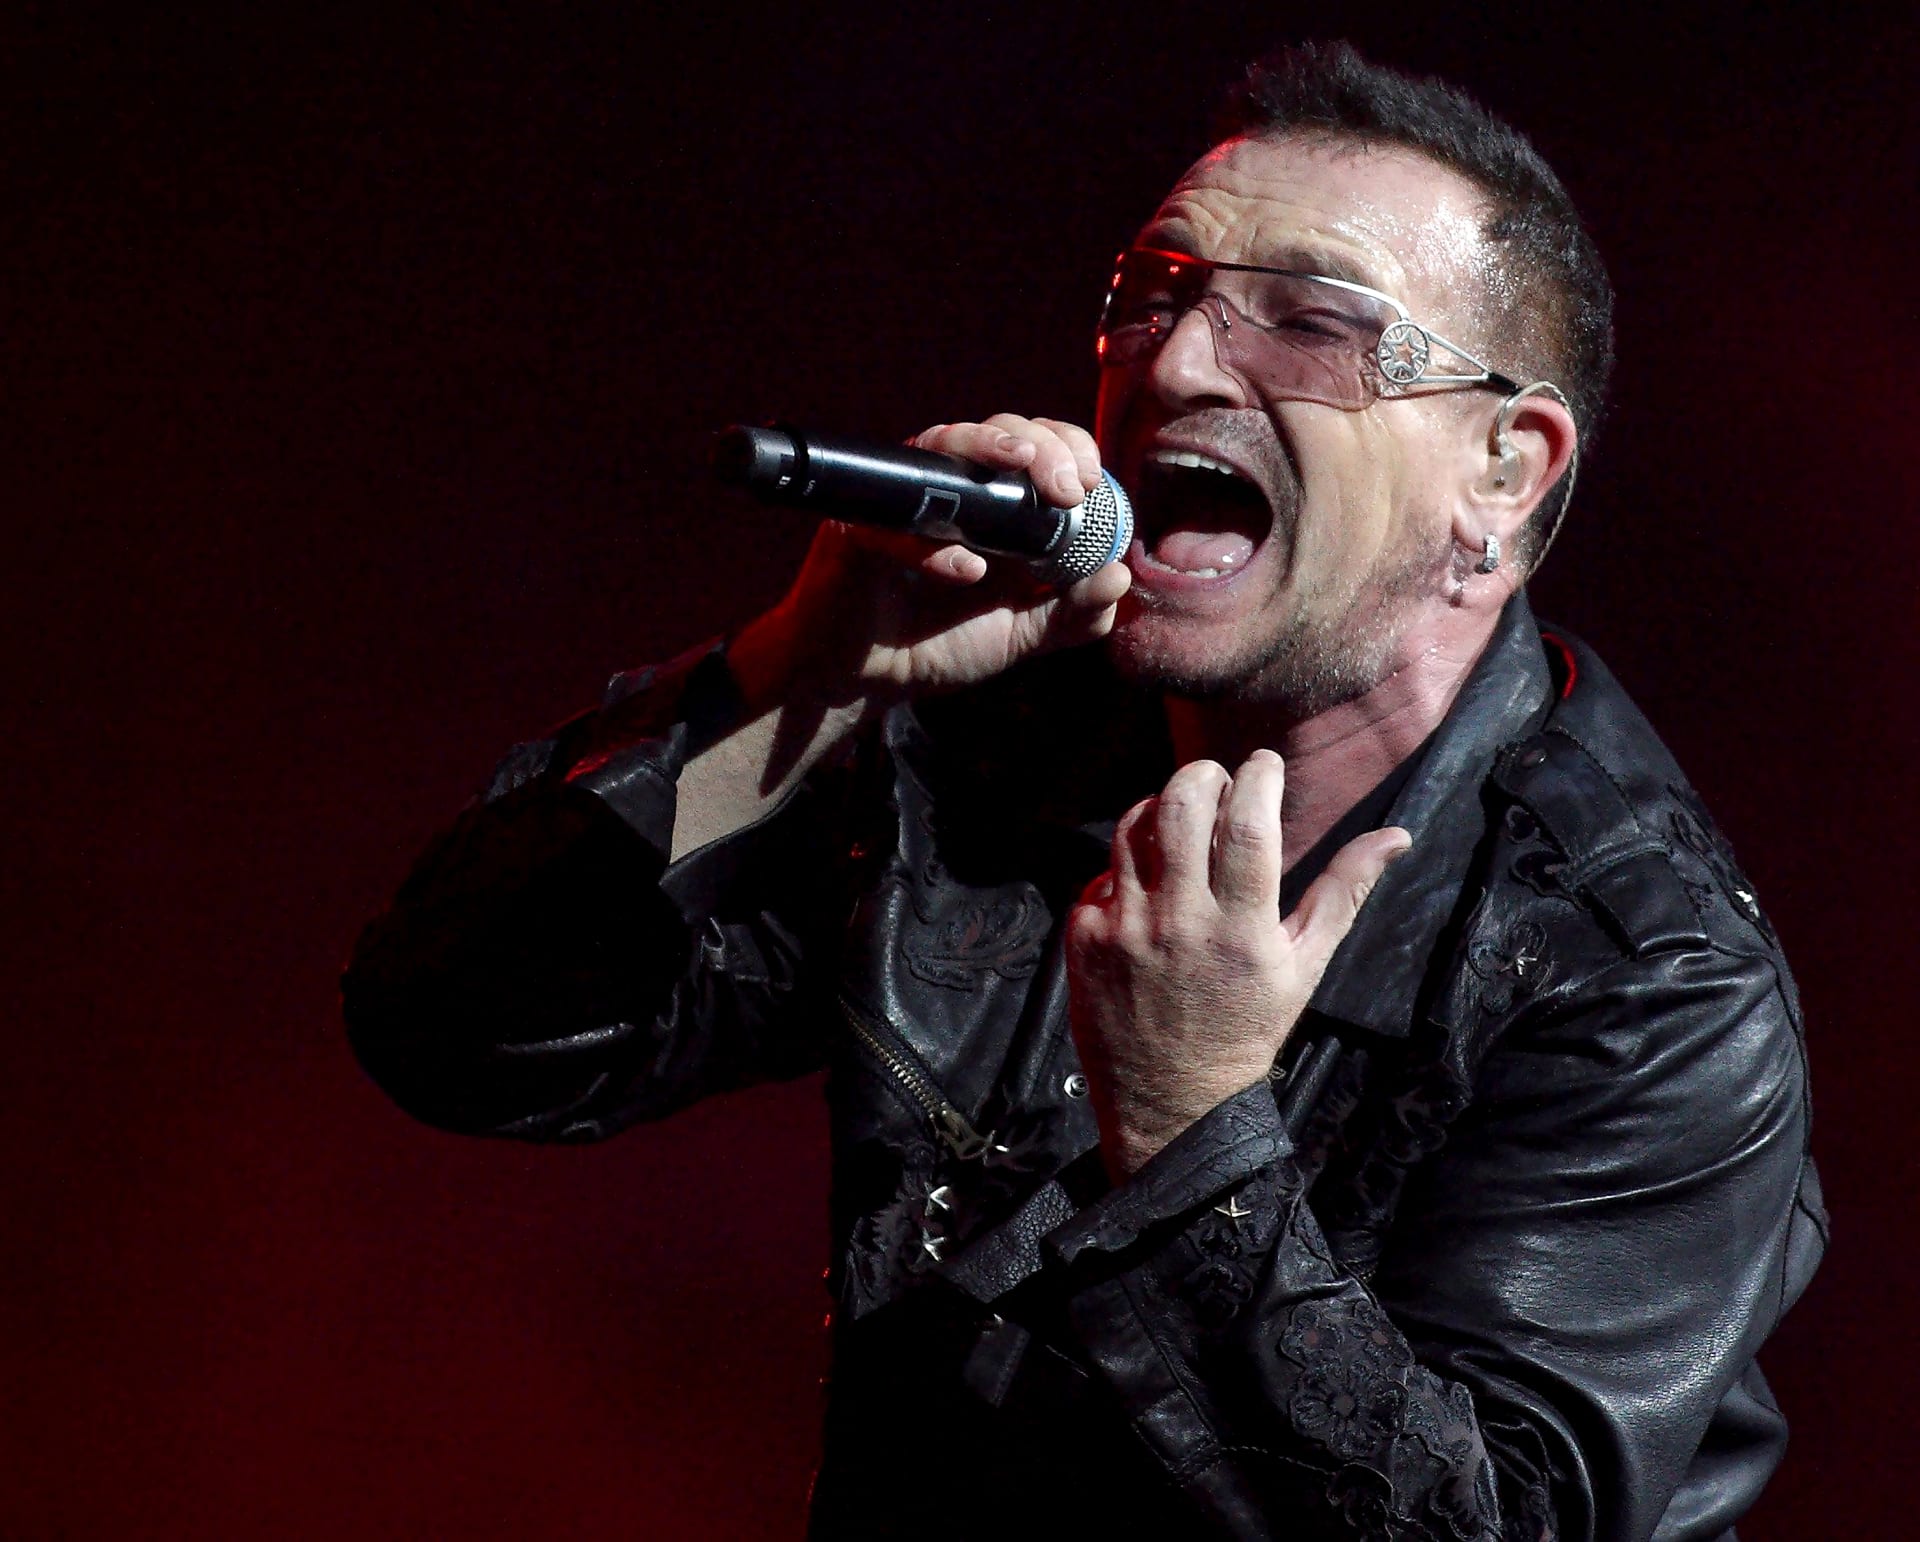 Druhou pozici s přibližně polovičním majetkem proti dominujícímu „broukovi“ kontroluje frontman skupiny U2 známý pod jménem Bono.